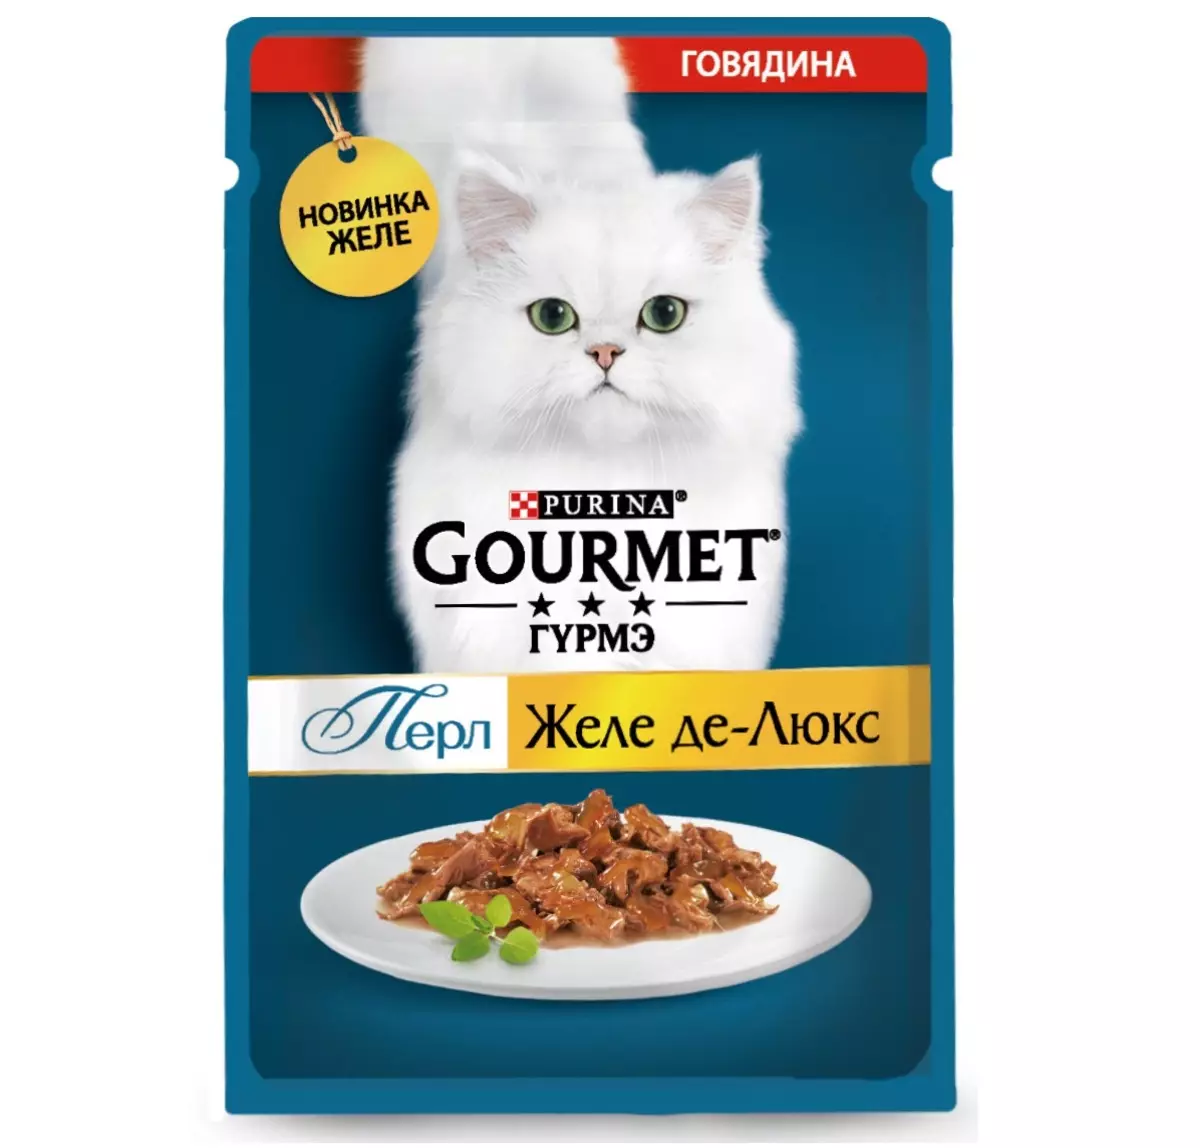 Gourmet: pakan kucing dan kucing purina, pate basah dan makanan kaleng kucing lainnya, komposisi mereka, ulasan 22711_31